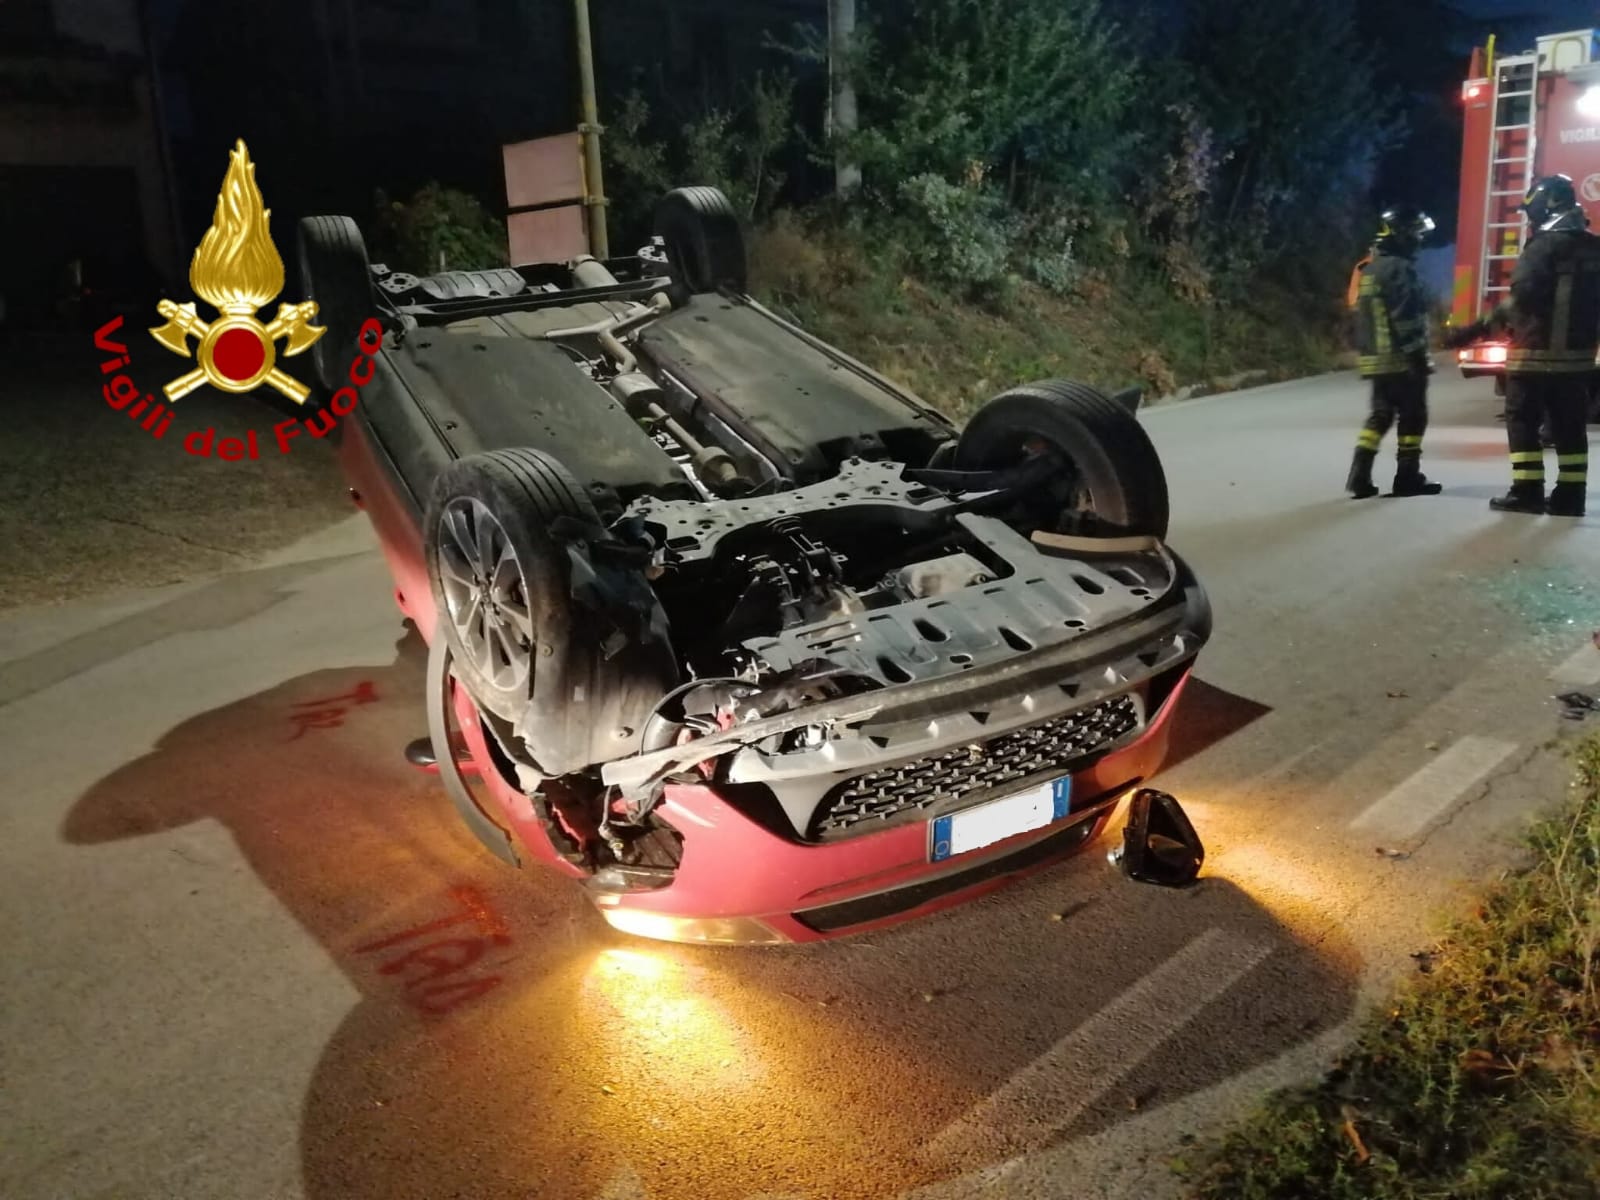 Bonito| Incidente sulla strada provinciale 106, auto si ribalta: intervento dei vigili del fuoco